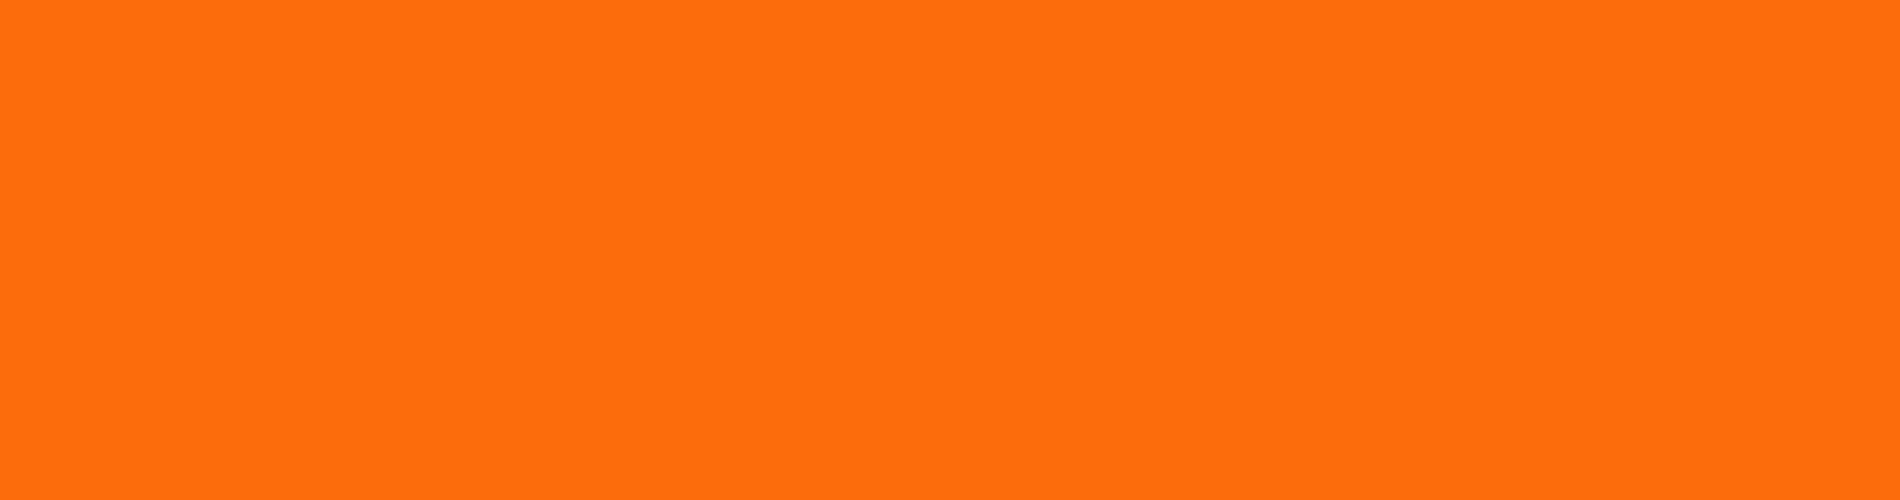 orange 1900x500.png